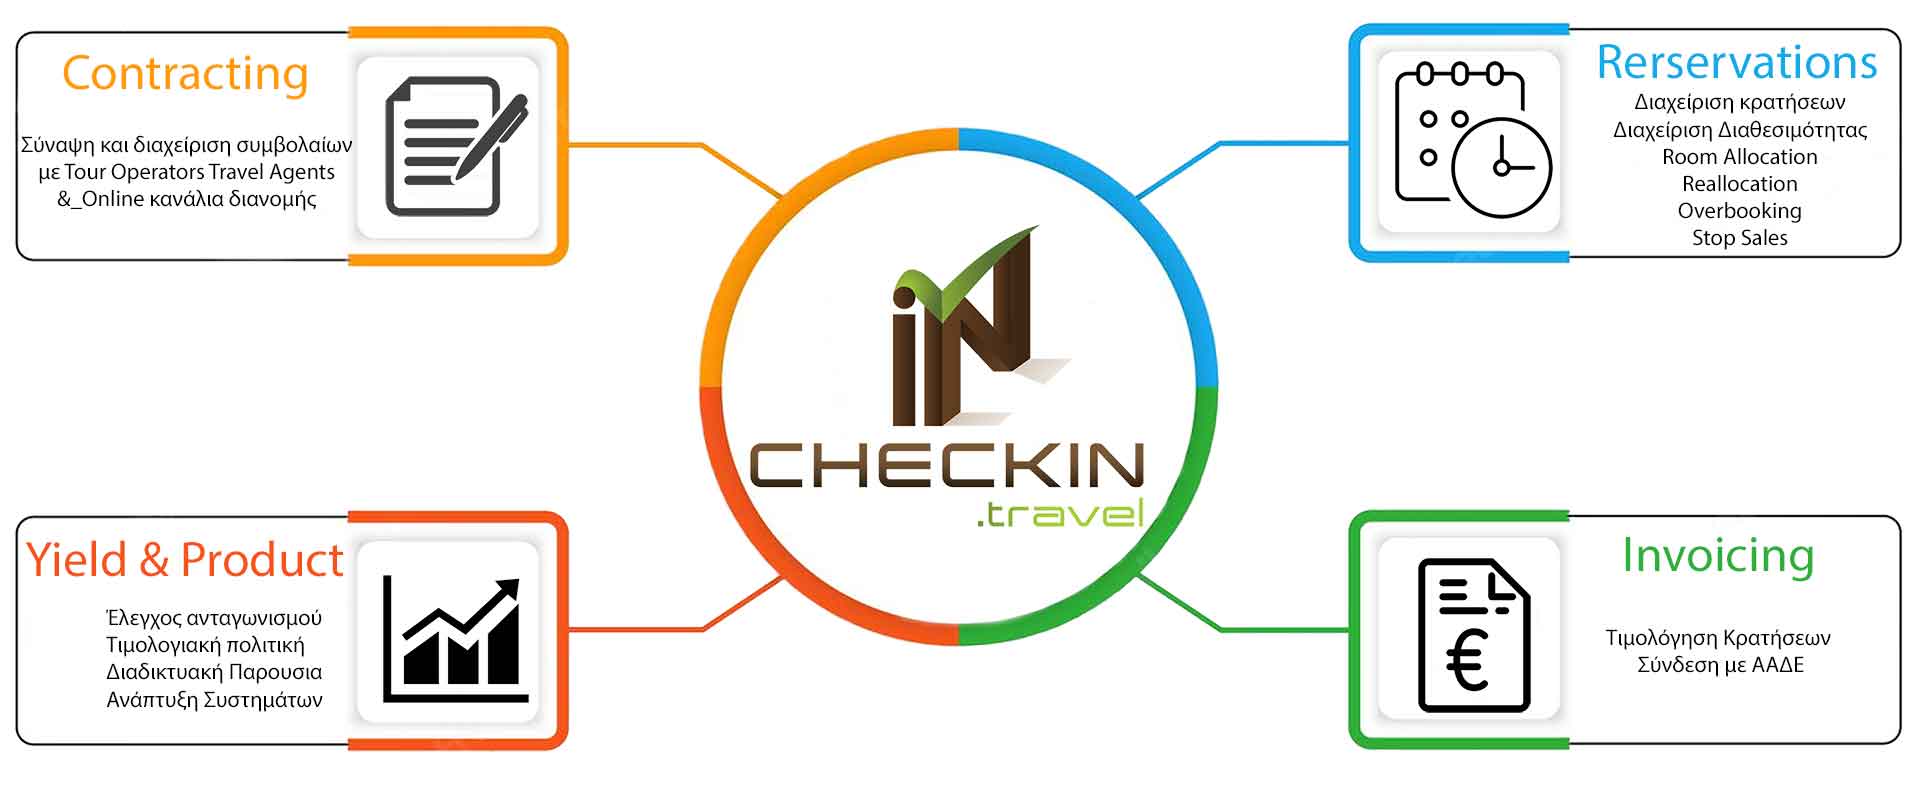 Checkin Services